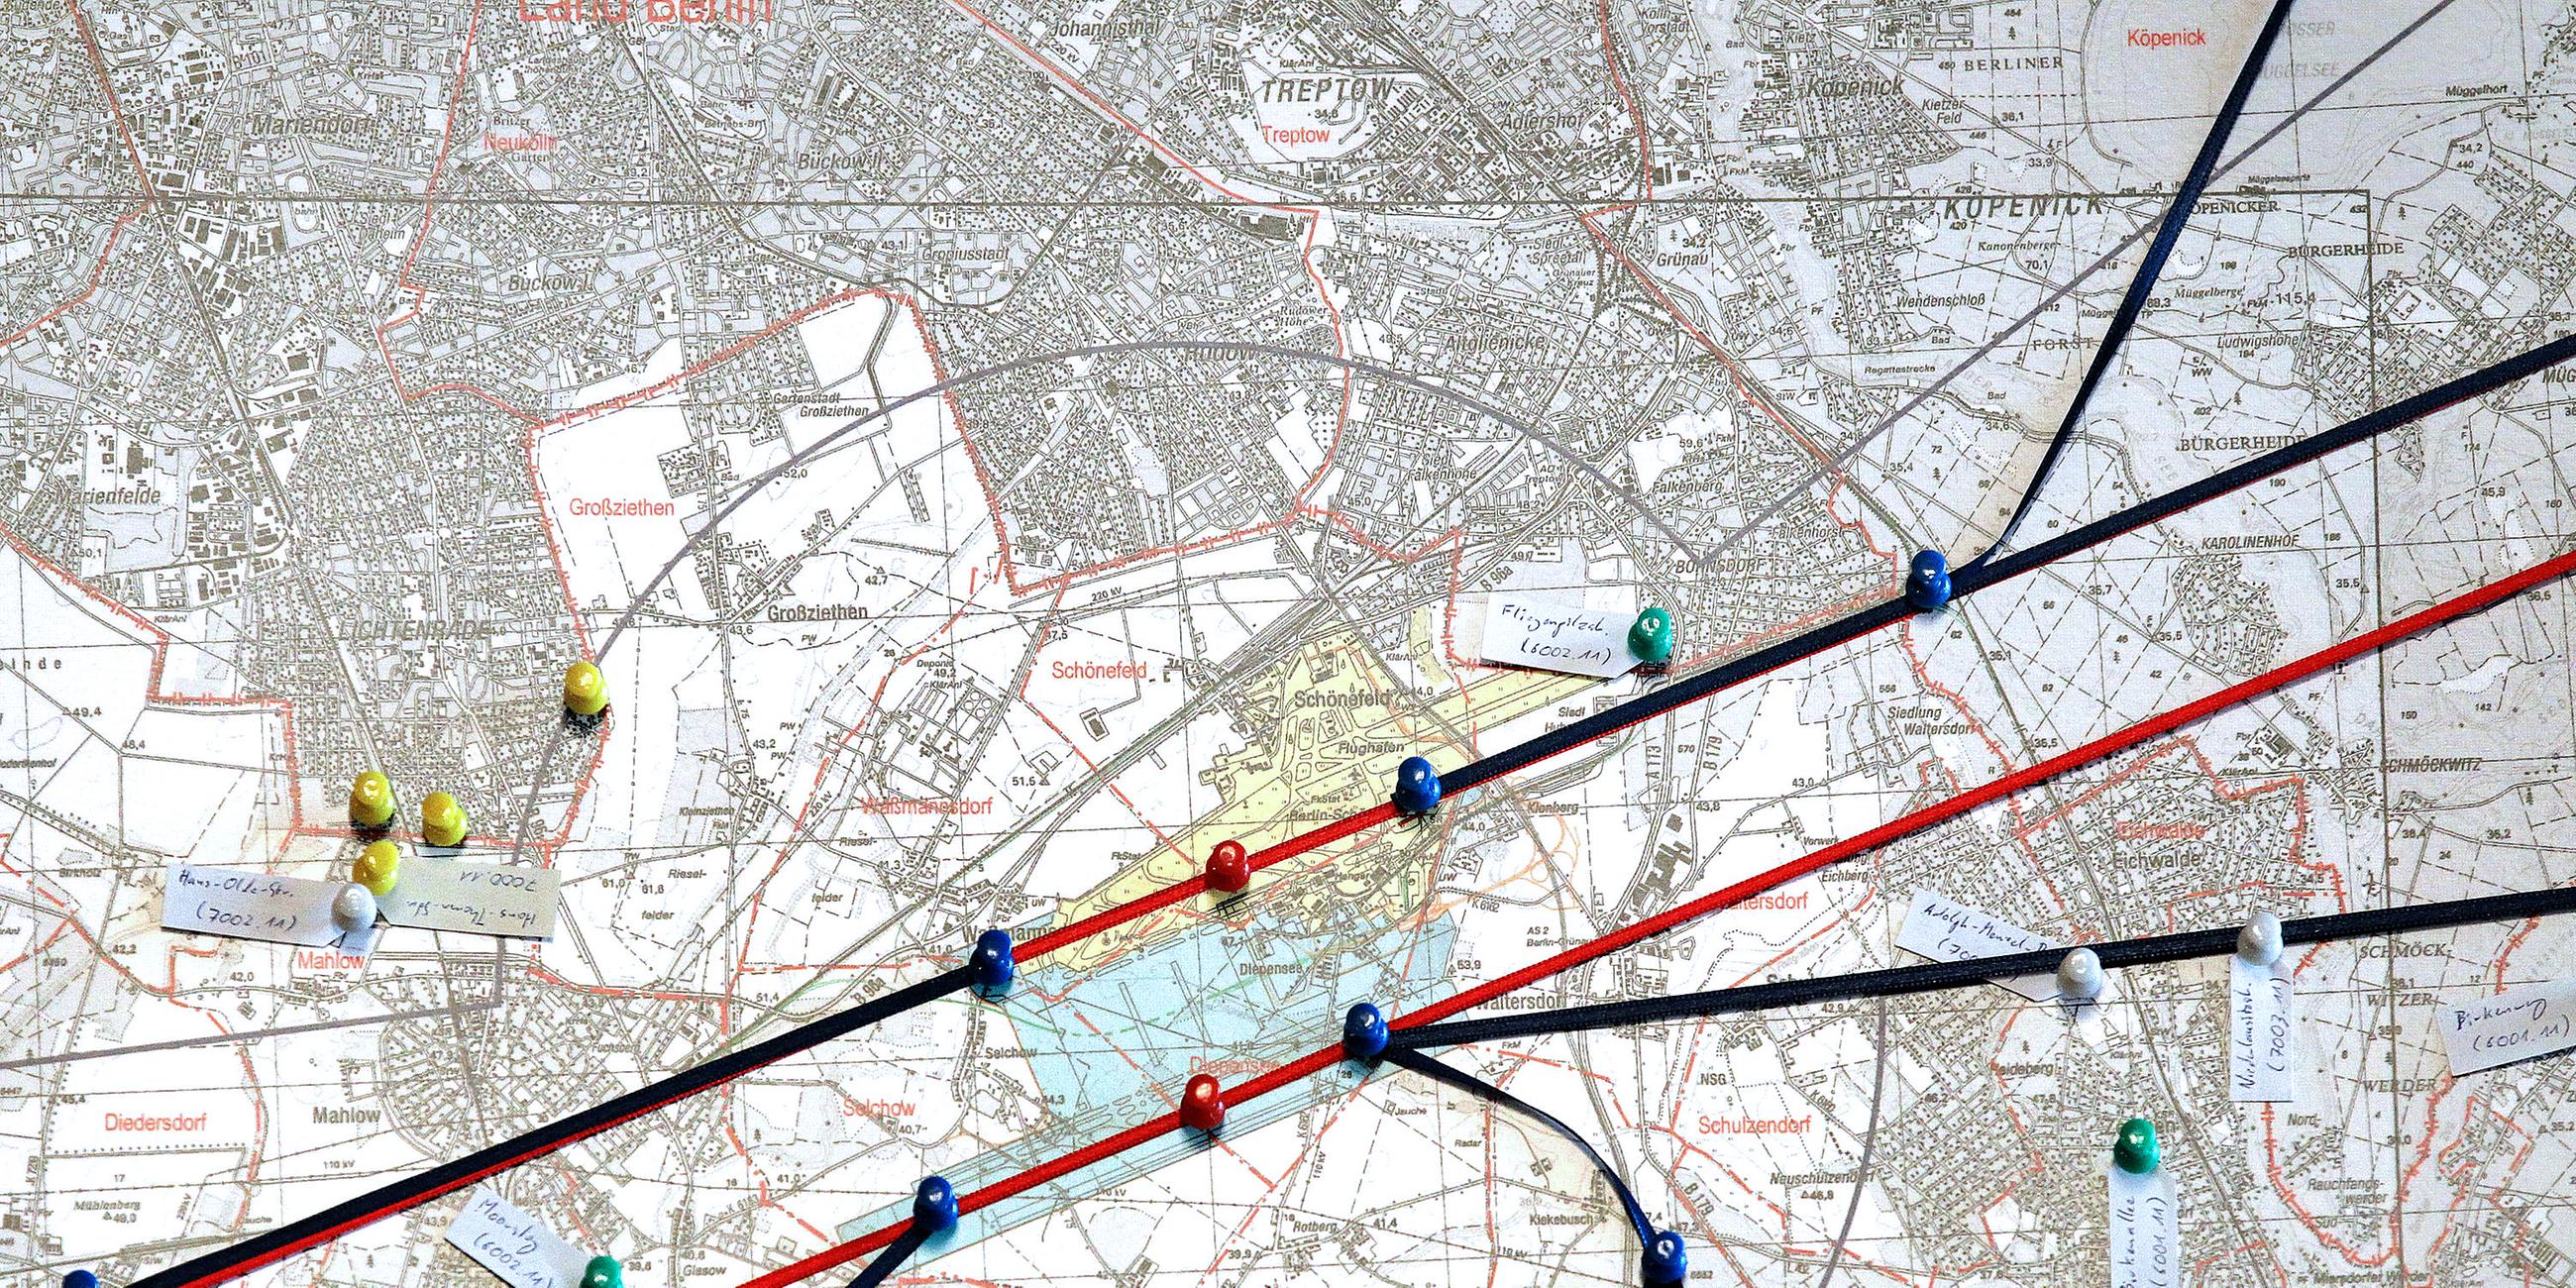 Archiv: Eine Karte mit Flugrouten hängt am 03.07.2012 vor Beginn eines Prozesses gegen den neuen Großflughafen Berlin-Brandenburg im Bundesverwaltungsgericht in Leipzig